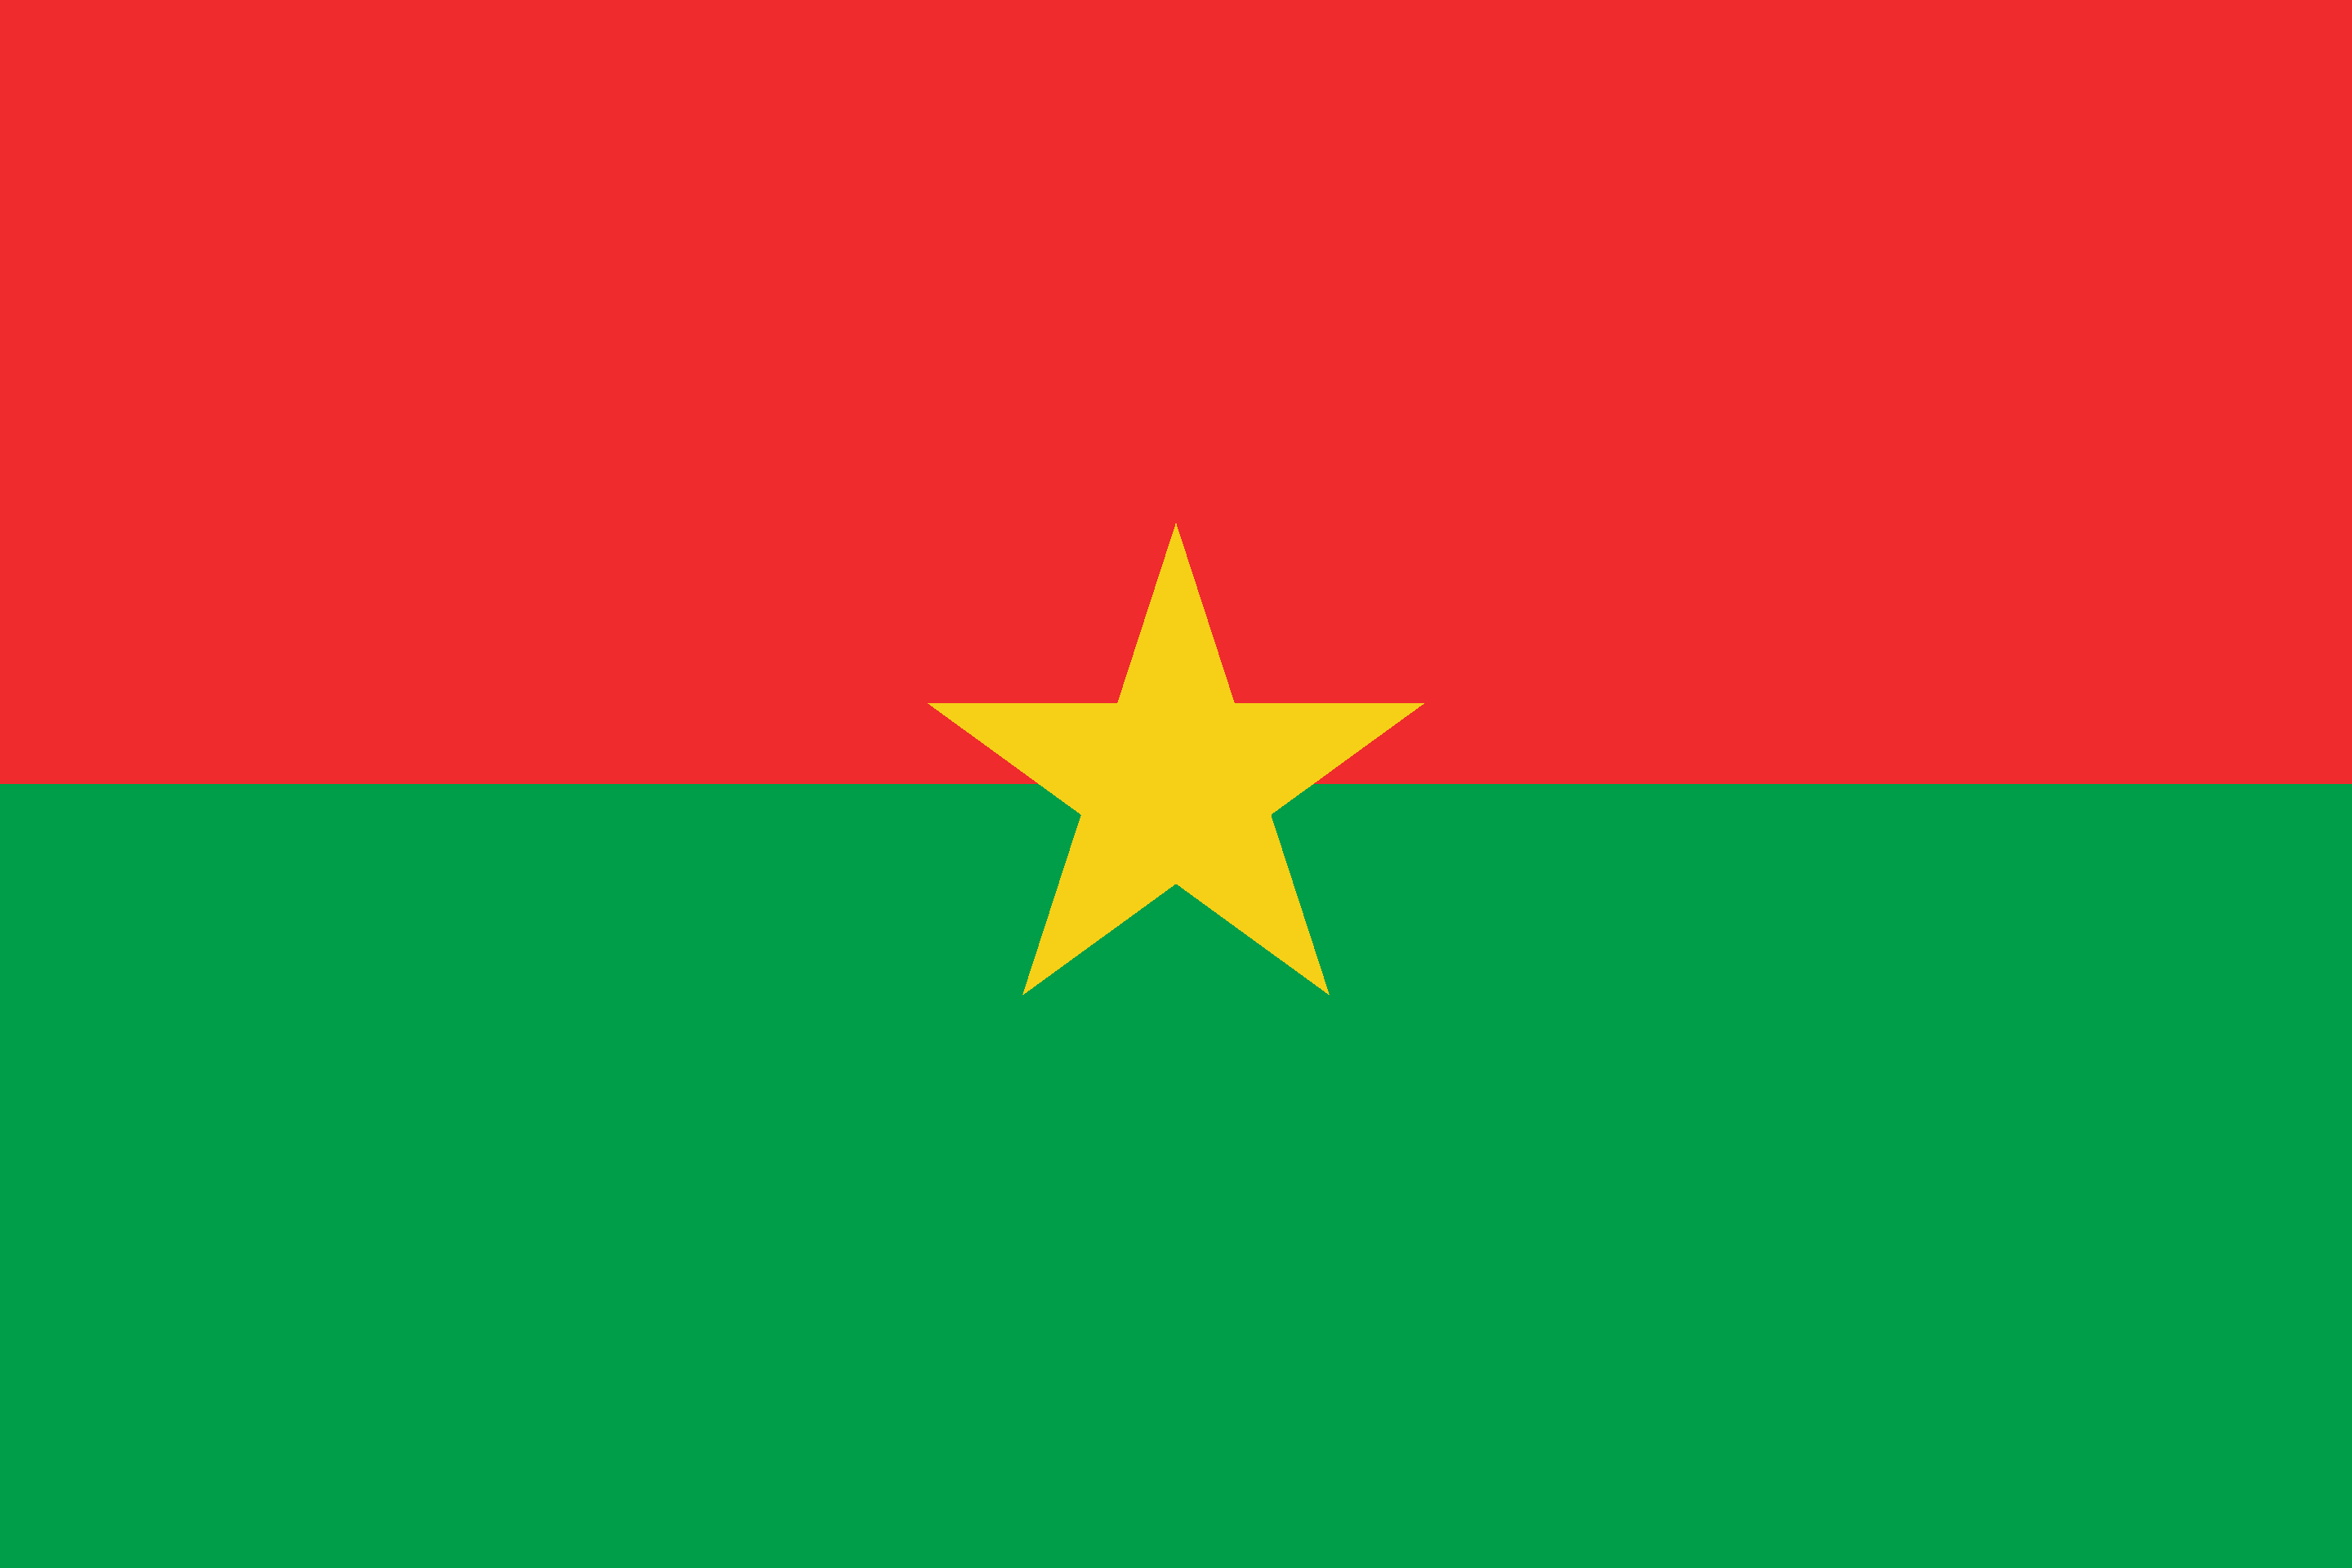 Drone Laws in Burkina Faso